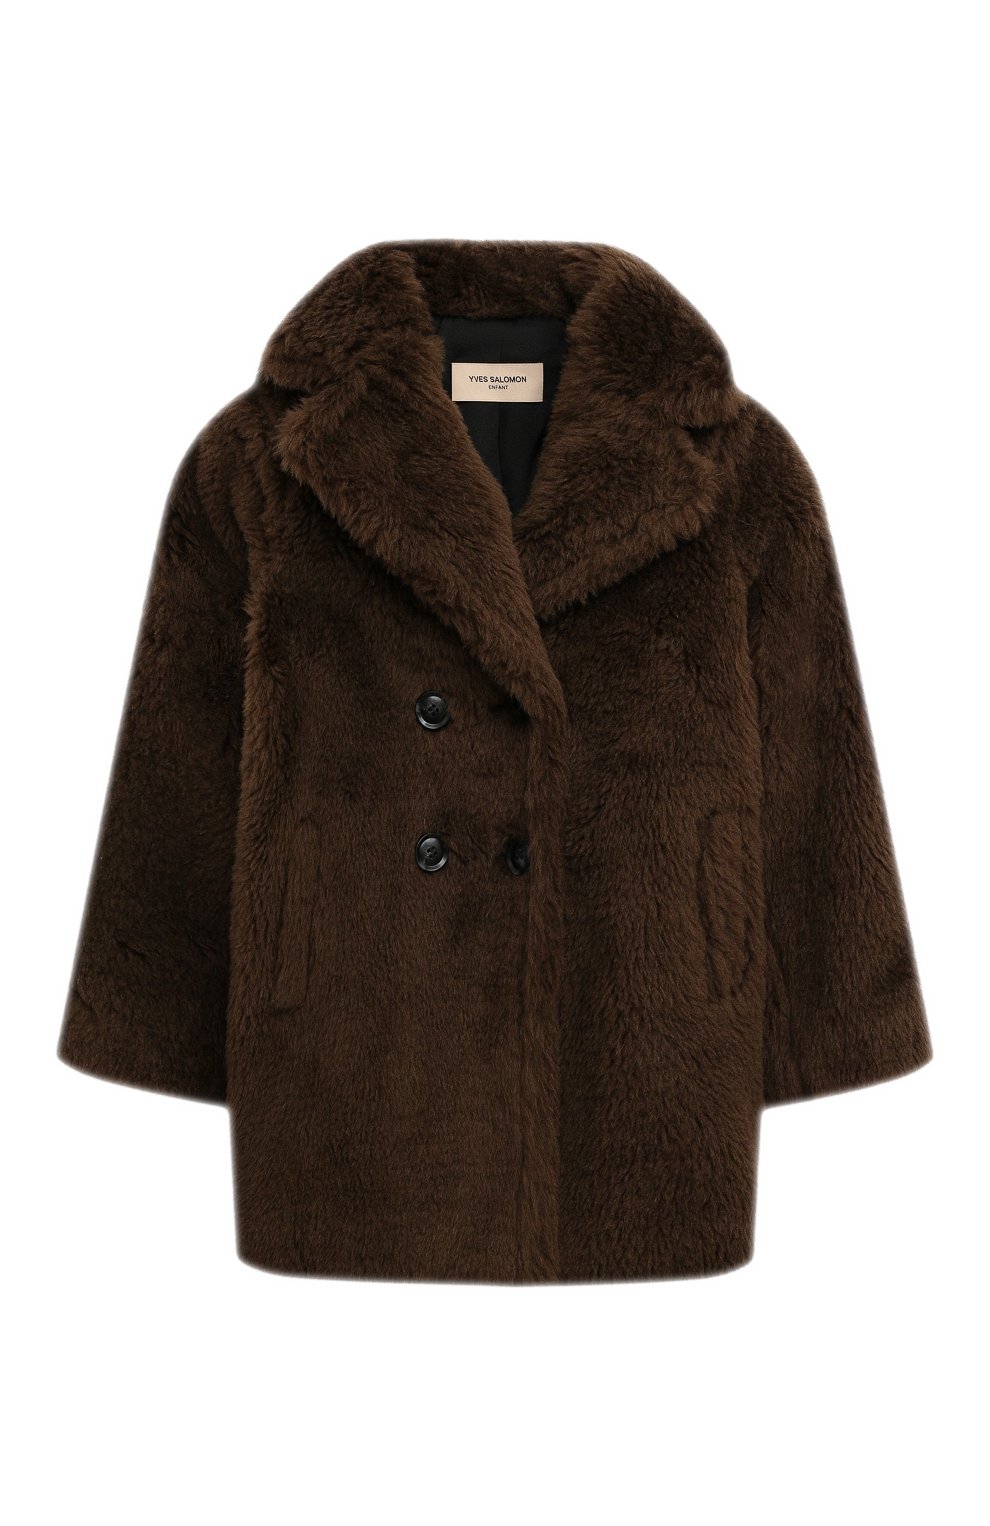 Шерстяное пальто YVES SALOMON ENFANT детское коричневого цвета — купить ...